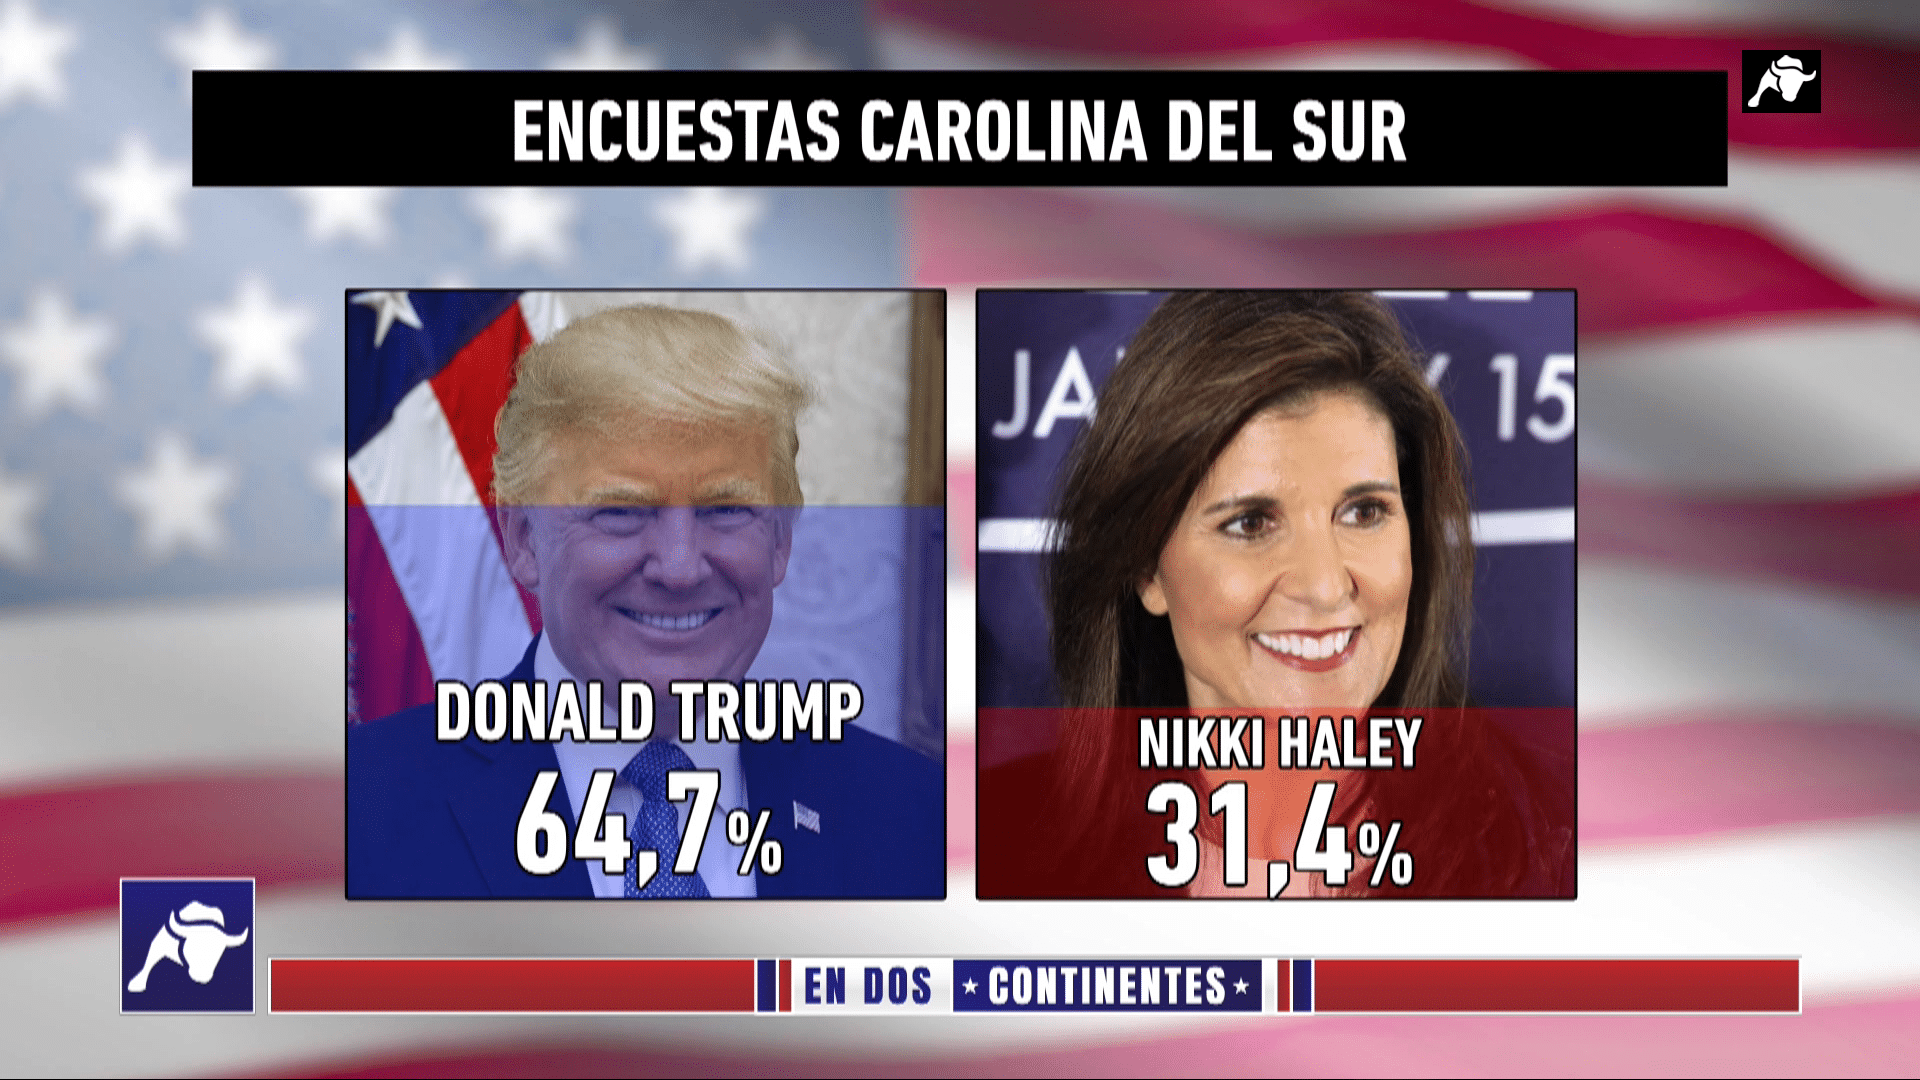  ¿Amaño electoral?: La acusación de Nikki Haley a Donald Trump